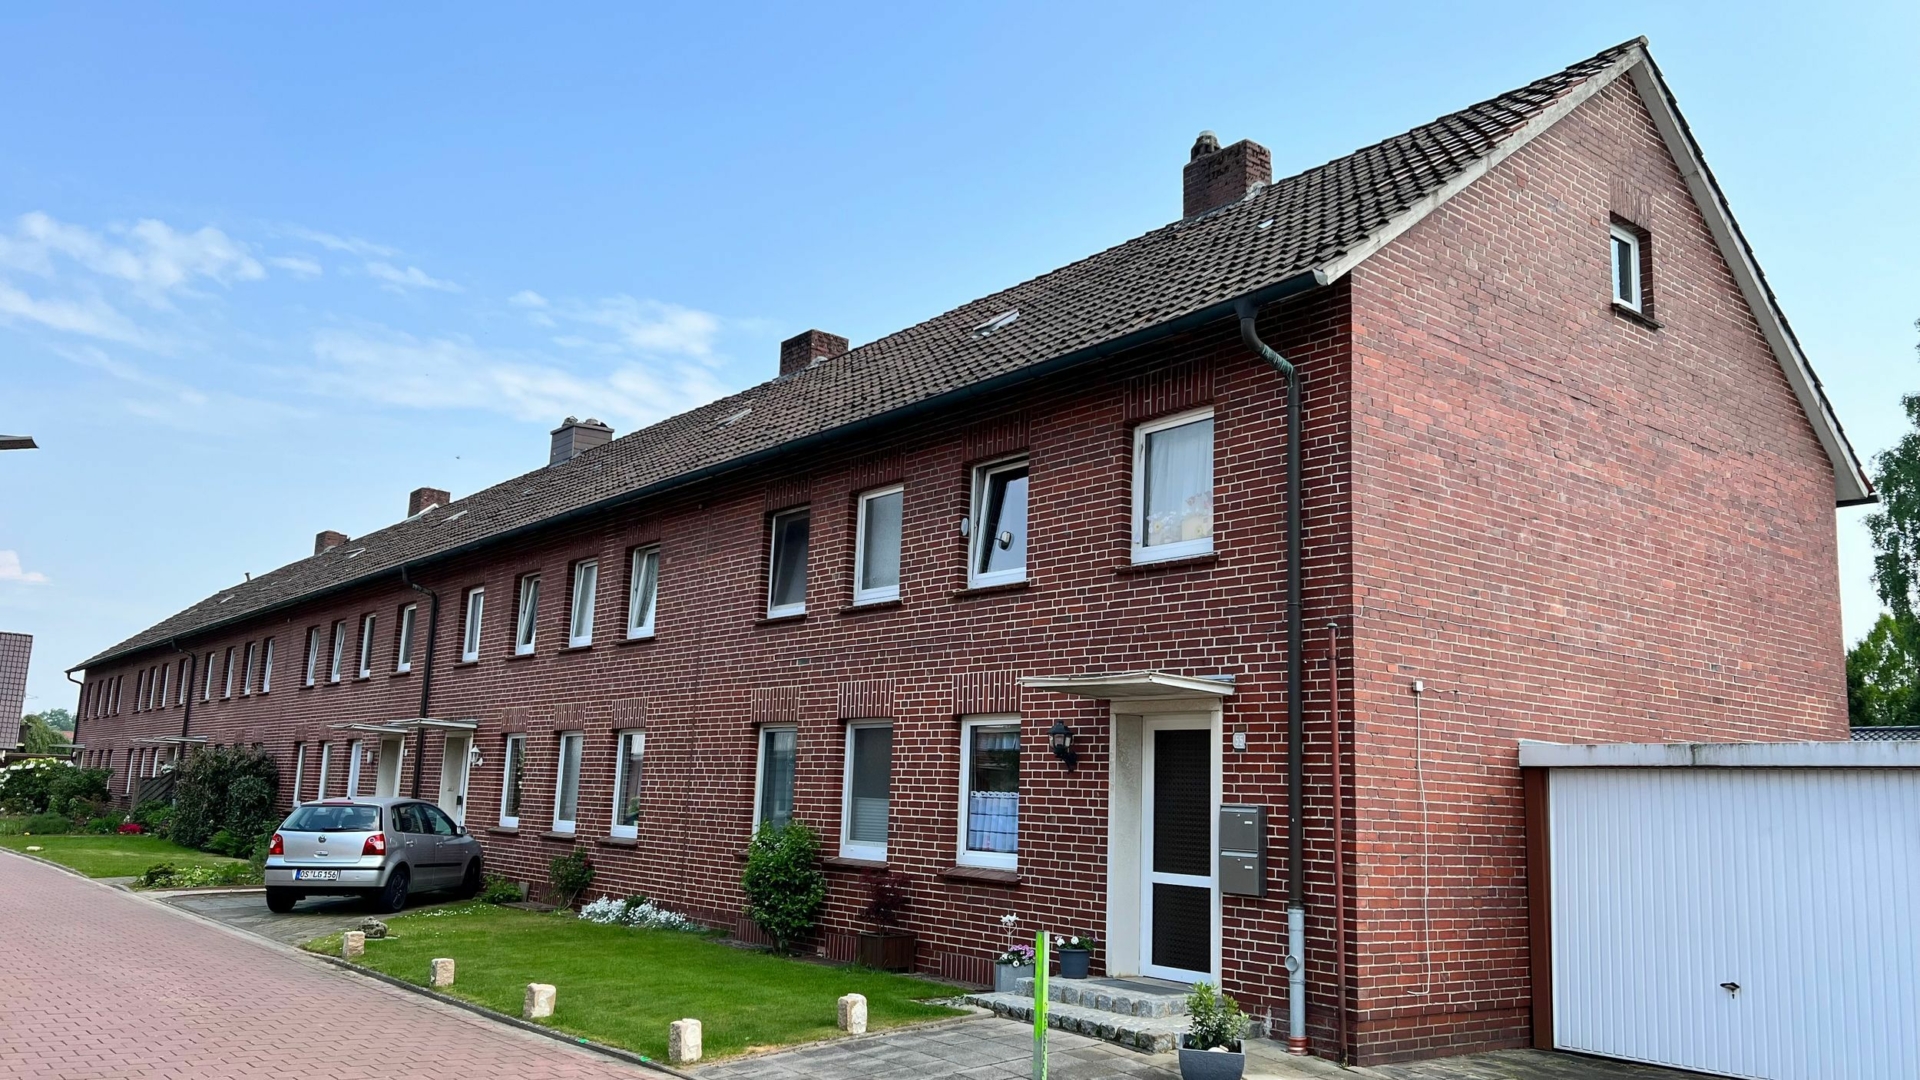 Zentral gelegene 3-Zimmer Wohnung in Bersenbrück zu vermieten! 49593 Bersenbrück, Etagenwohnung